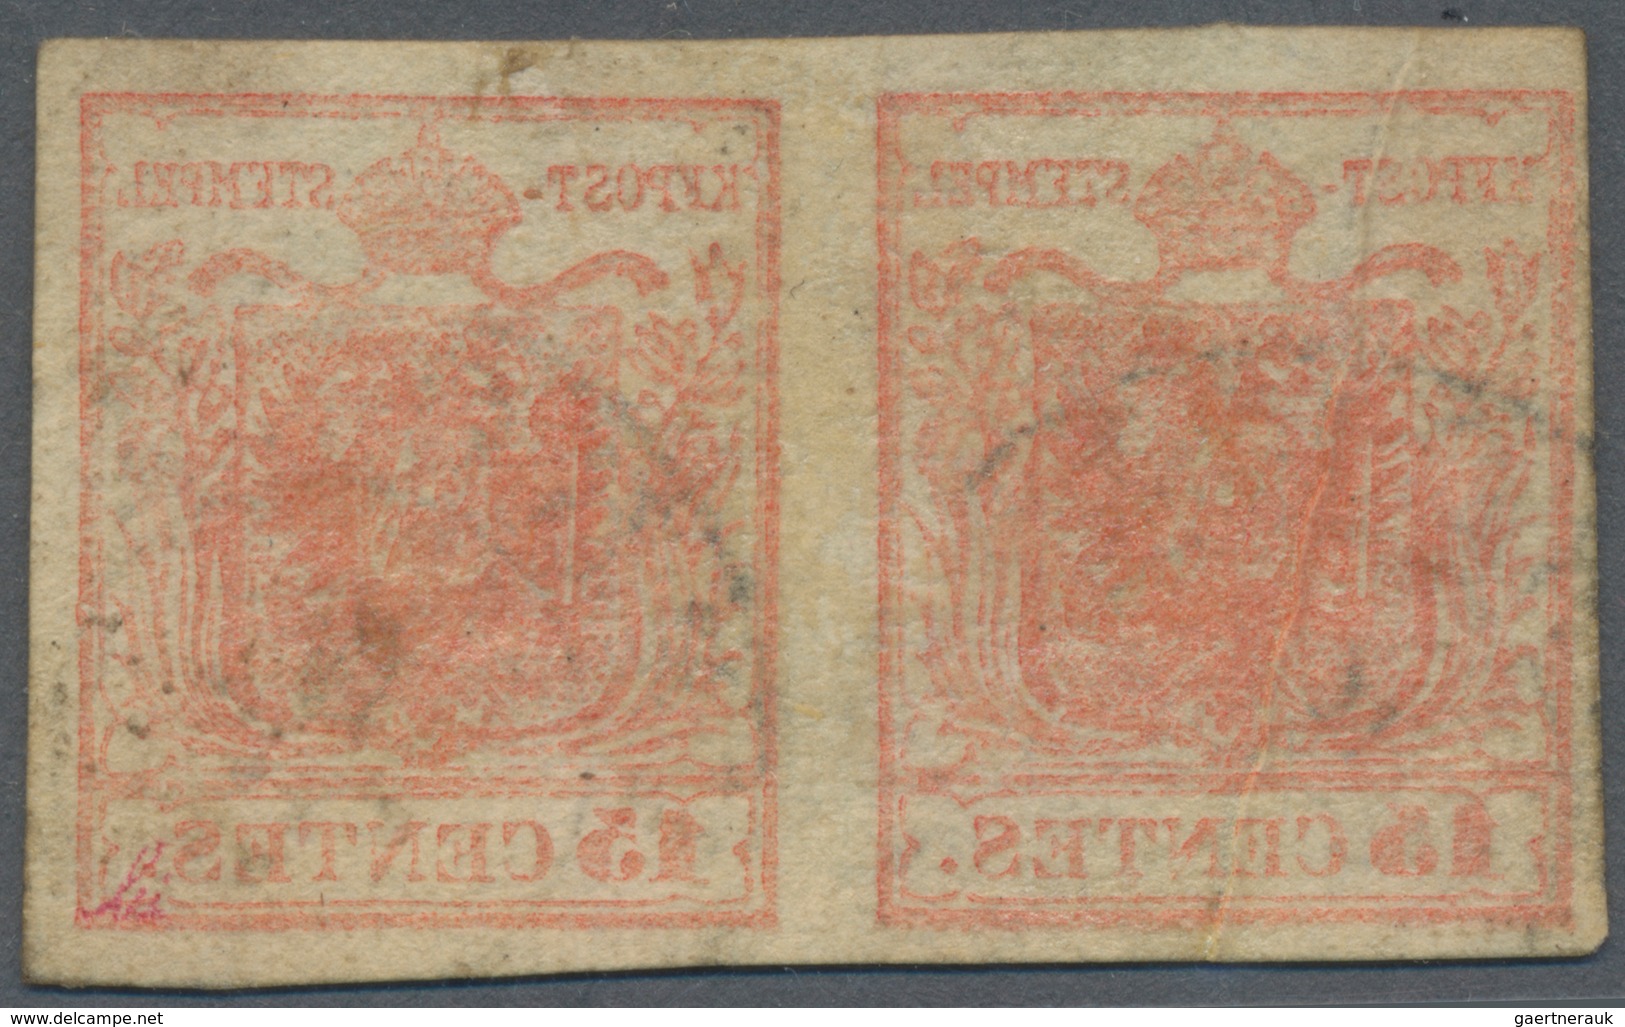 Österreich: 1850, 6 Kreuzer rötlichbraun auf Handpapier, Type Ib, auf kompletter Retour-Recepisse vo